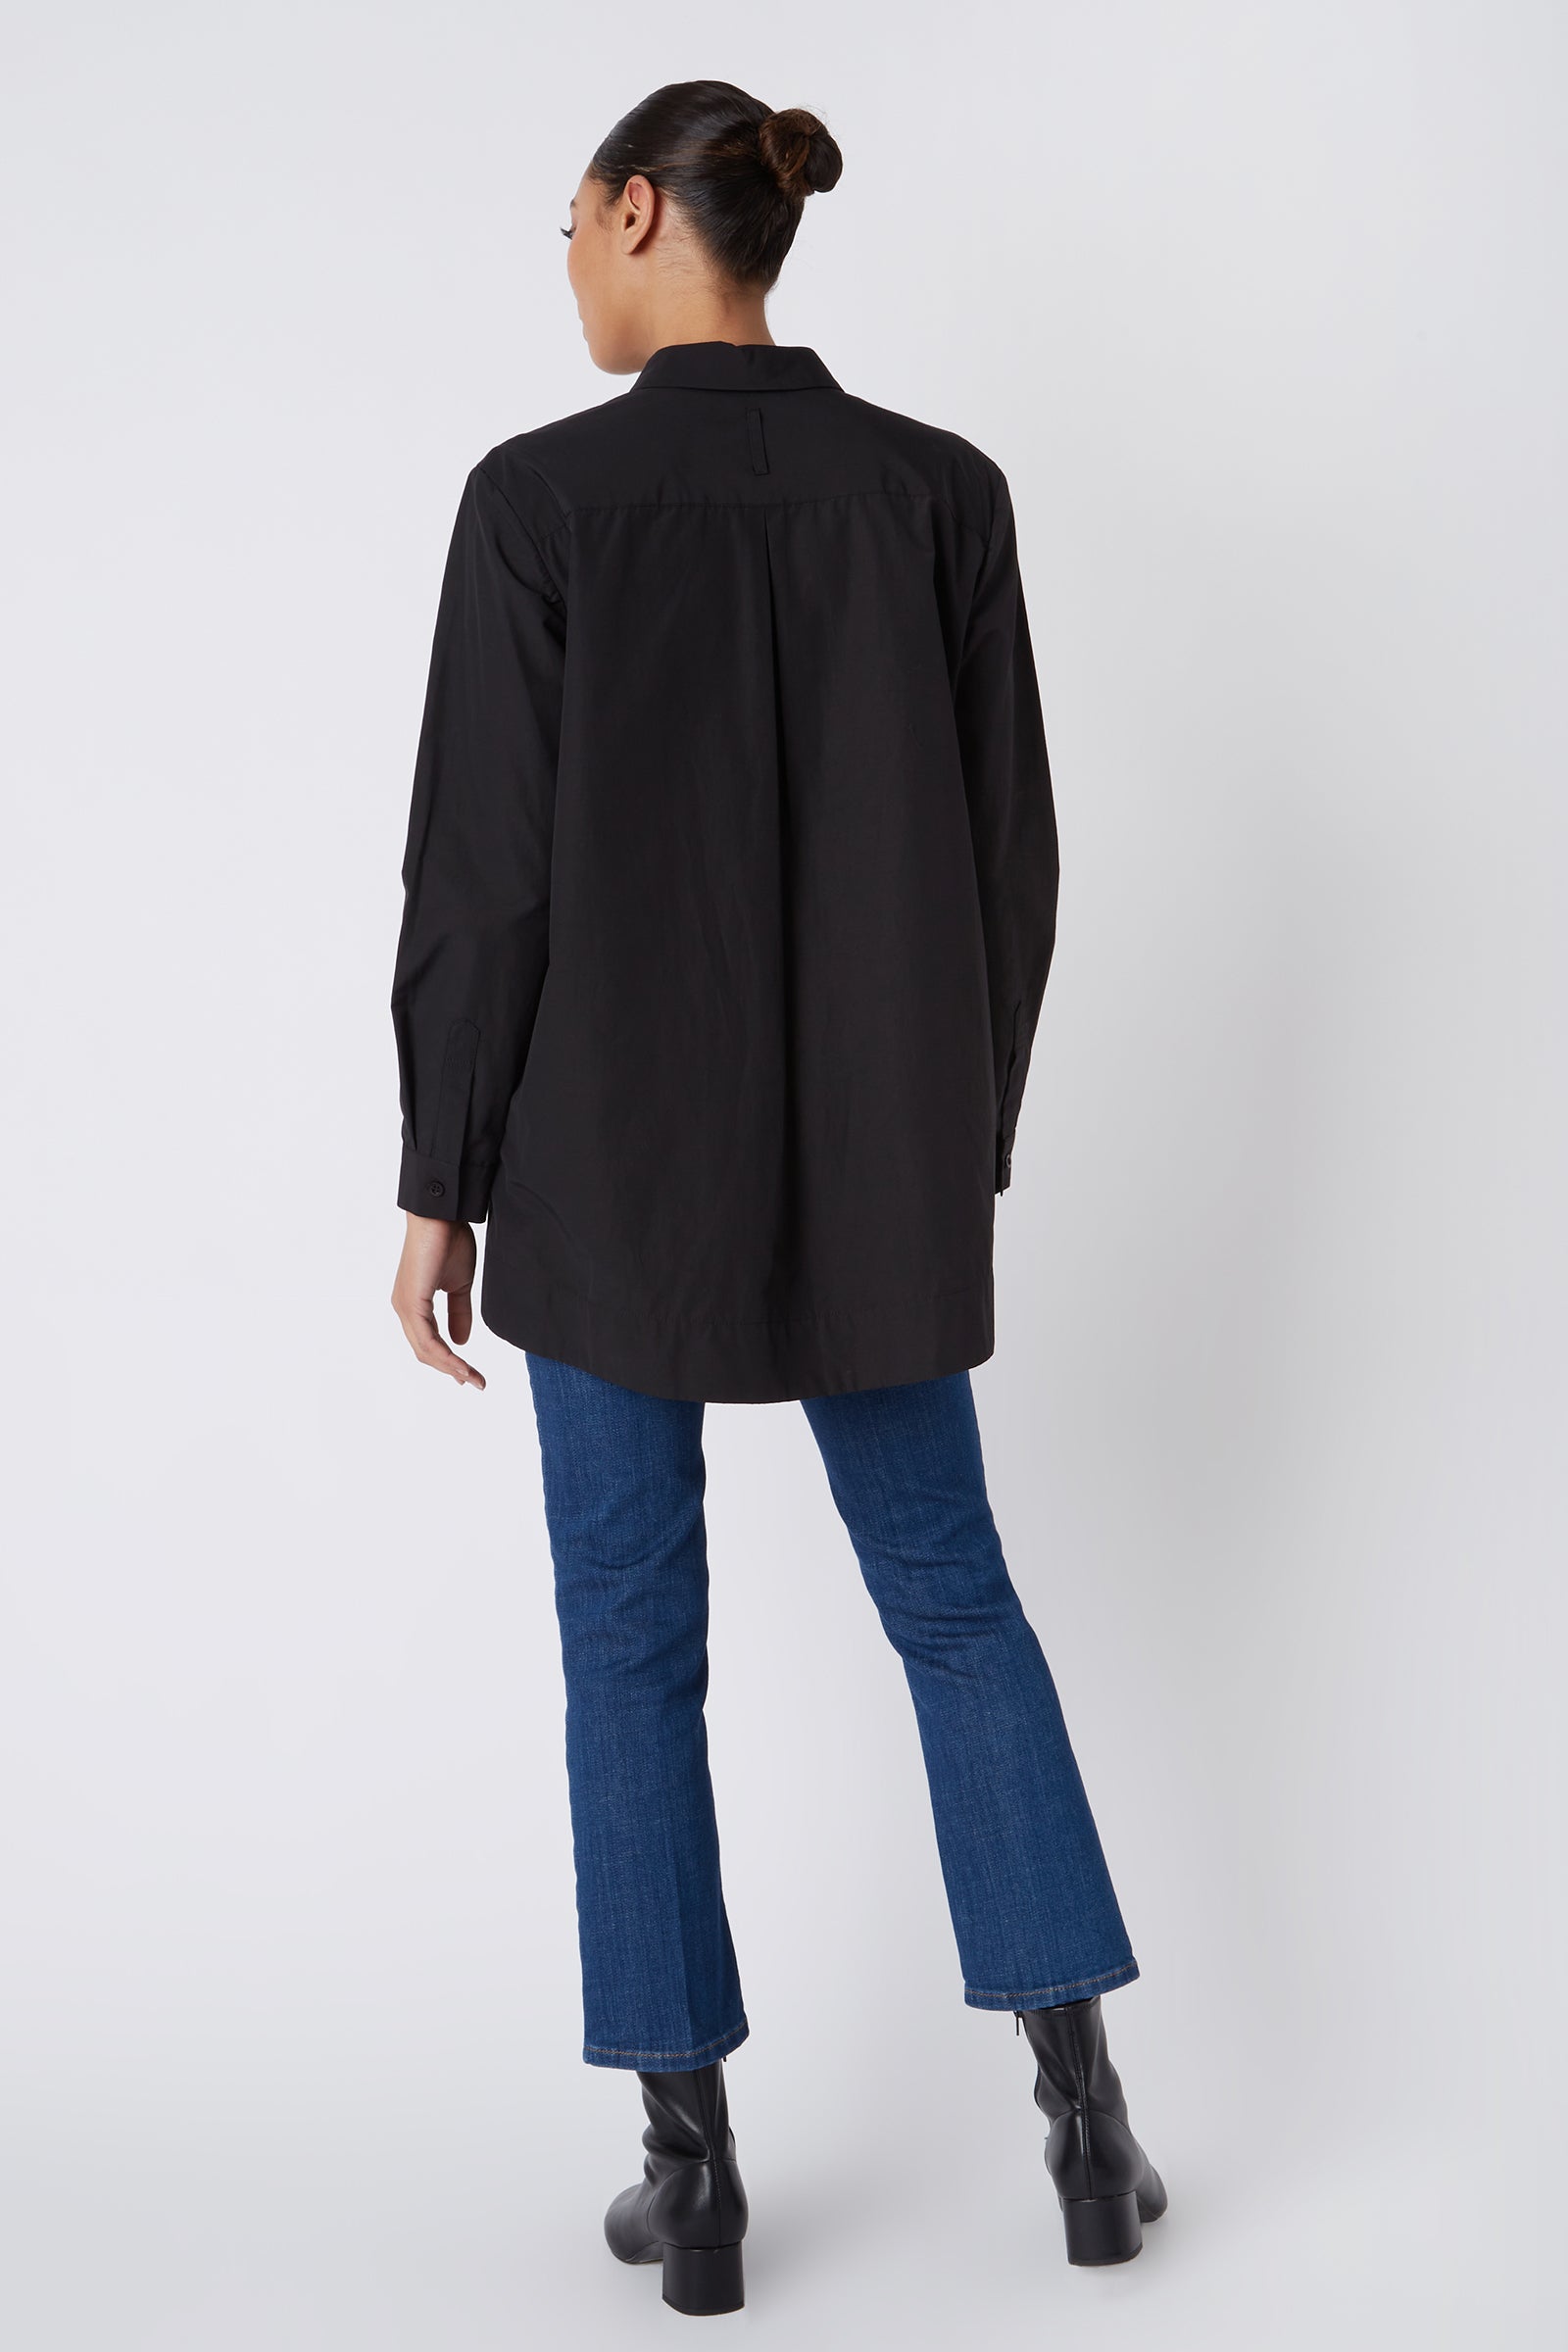 Kal Rieman Lori Tab Collar Tunic in Black on Model Full Back View